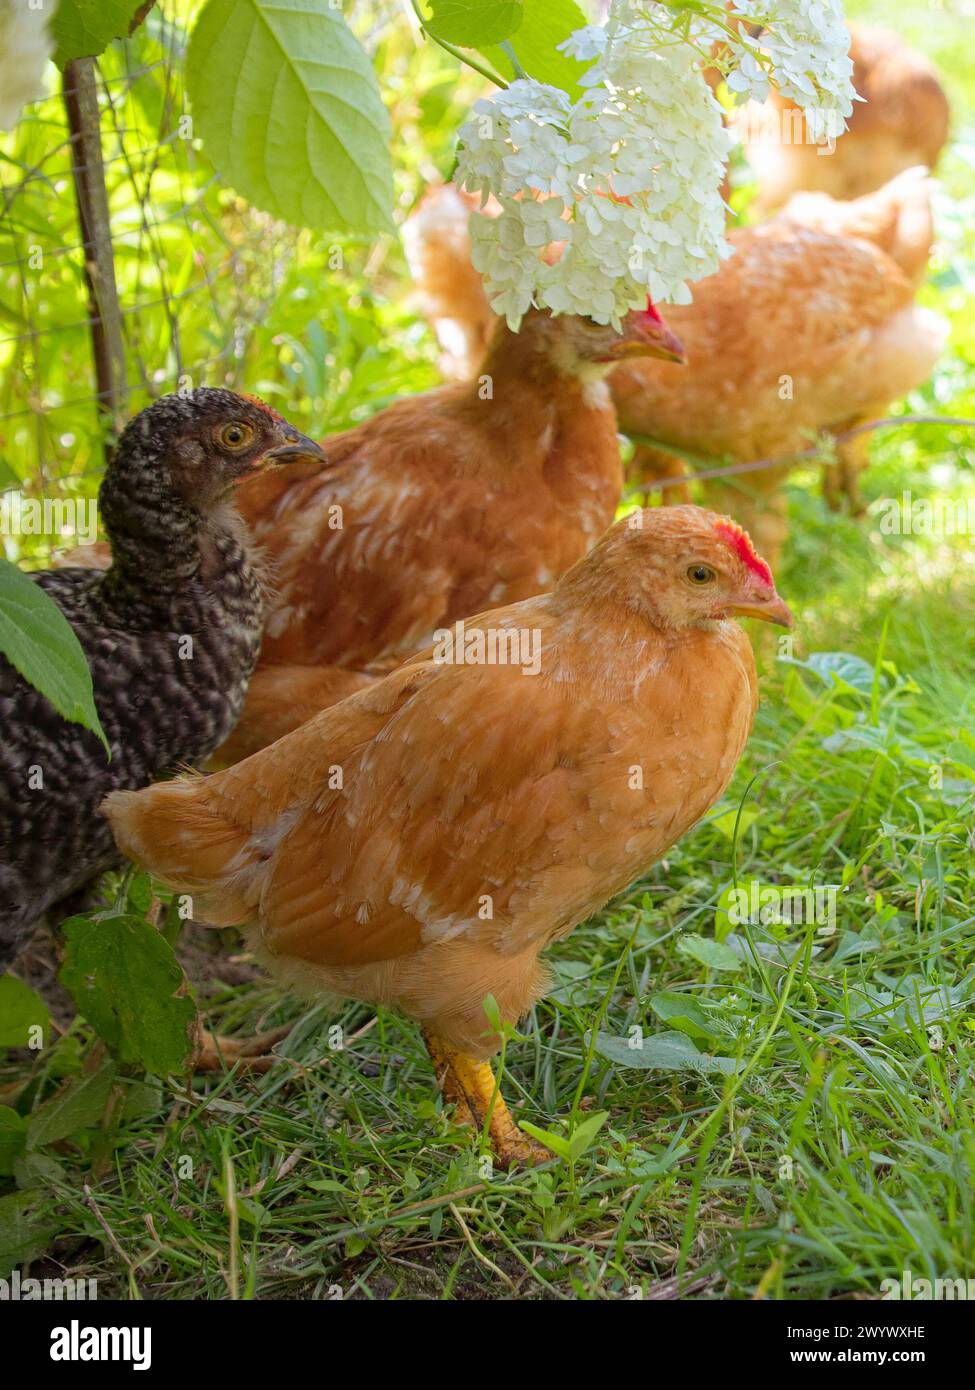 Image vibrante capturant des poulets au milieu de la nature ; ils sont entourés de verdure, y compris l'herbe et les plantes. Banque D'Images